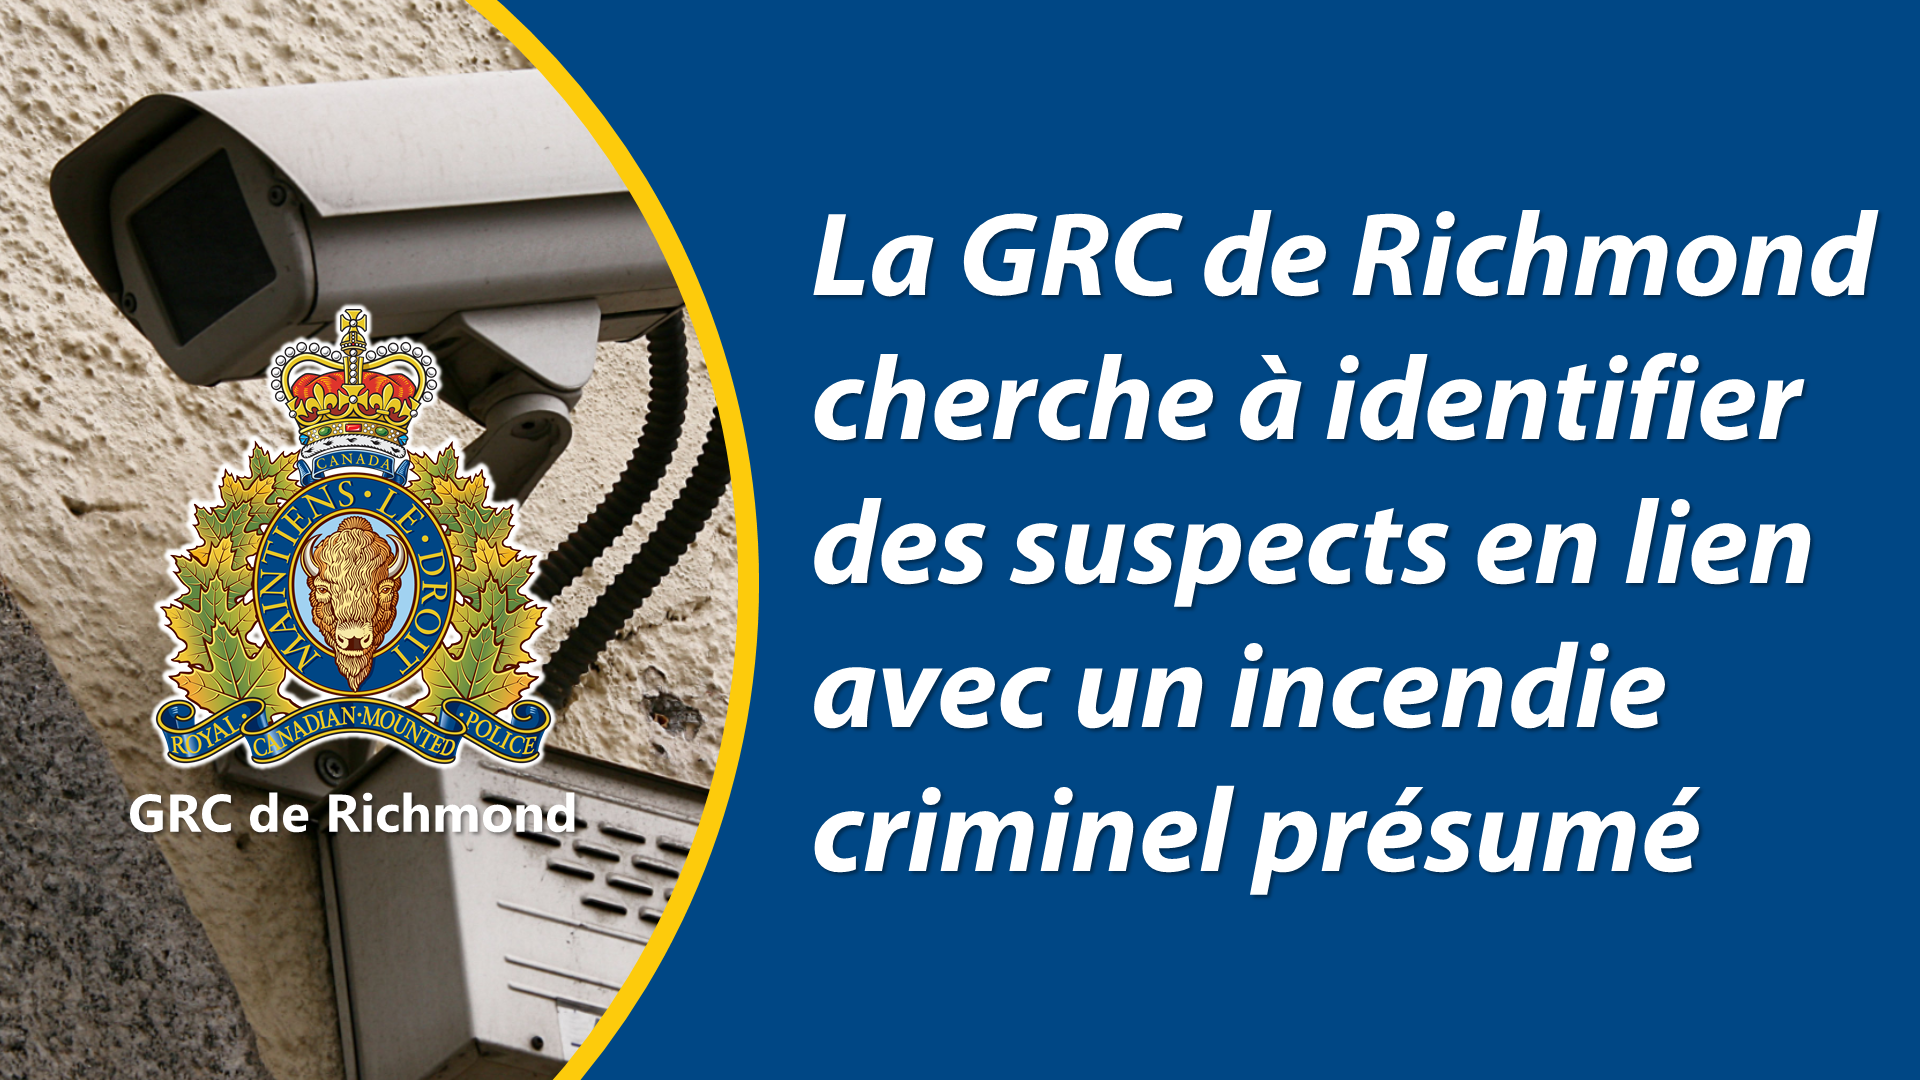 La GRC de Richmond cherche à identifier des suspects en lien avec un incendie criminel présumé